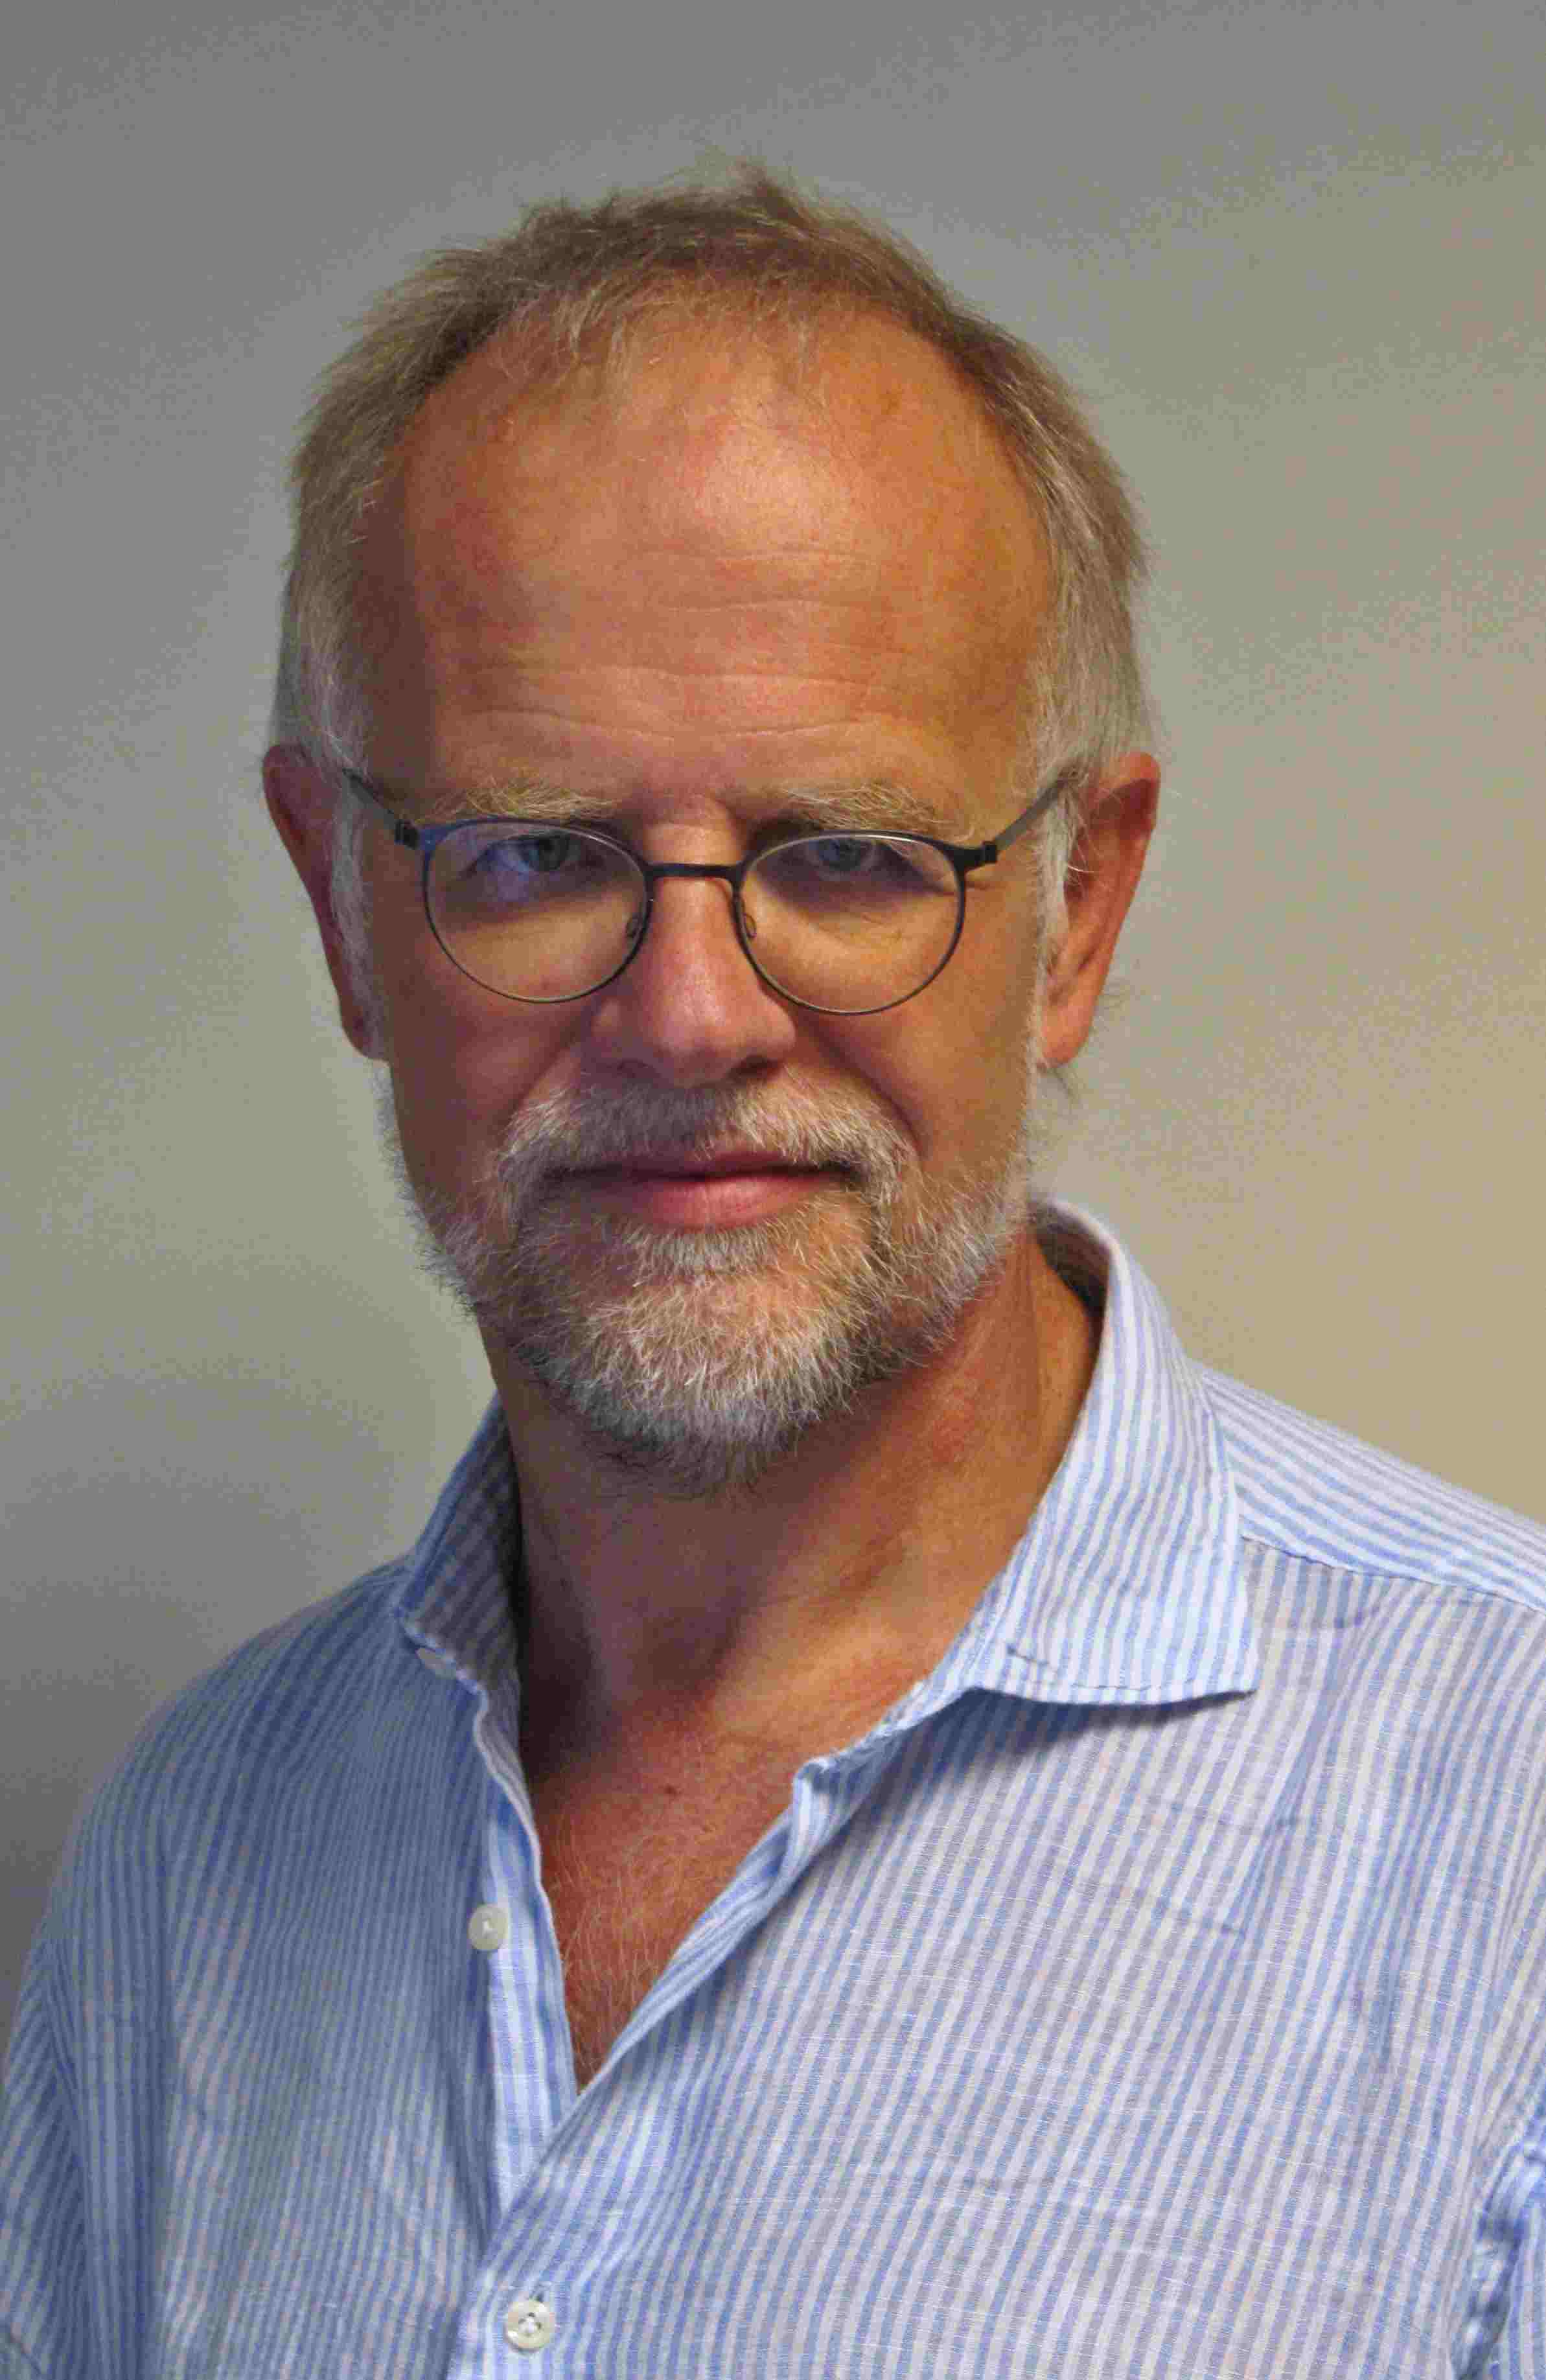 Andreas Motsch, Associate Professor